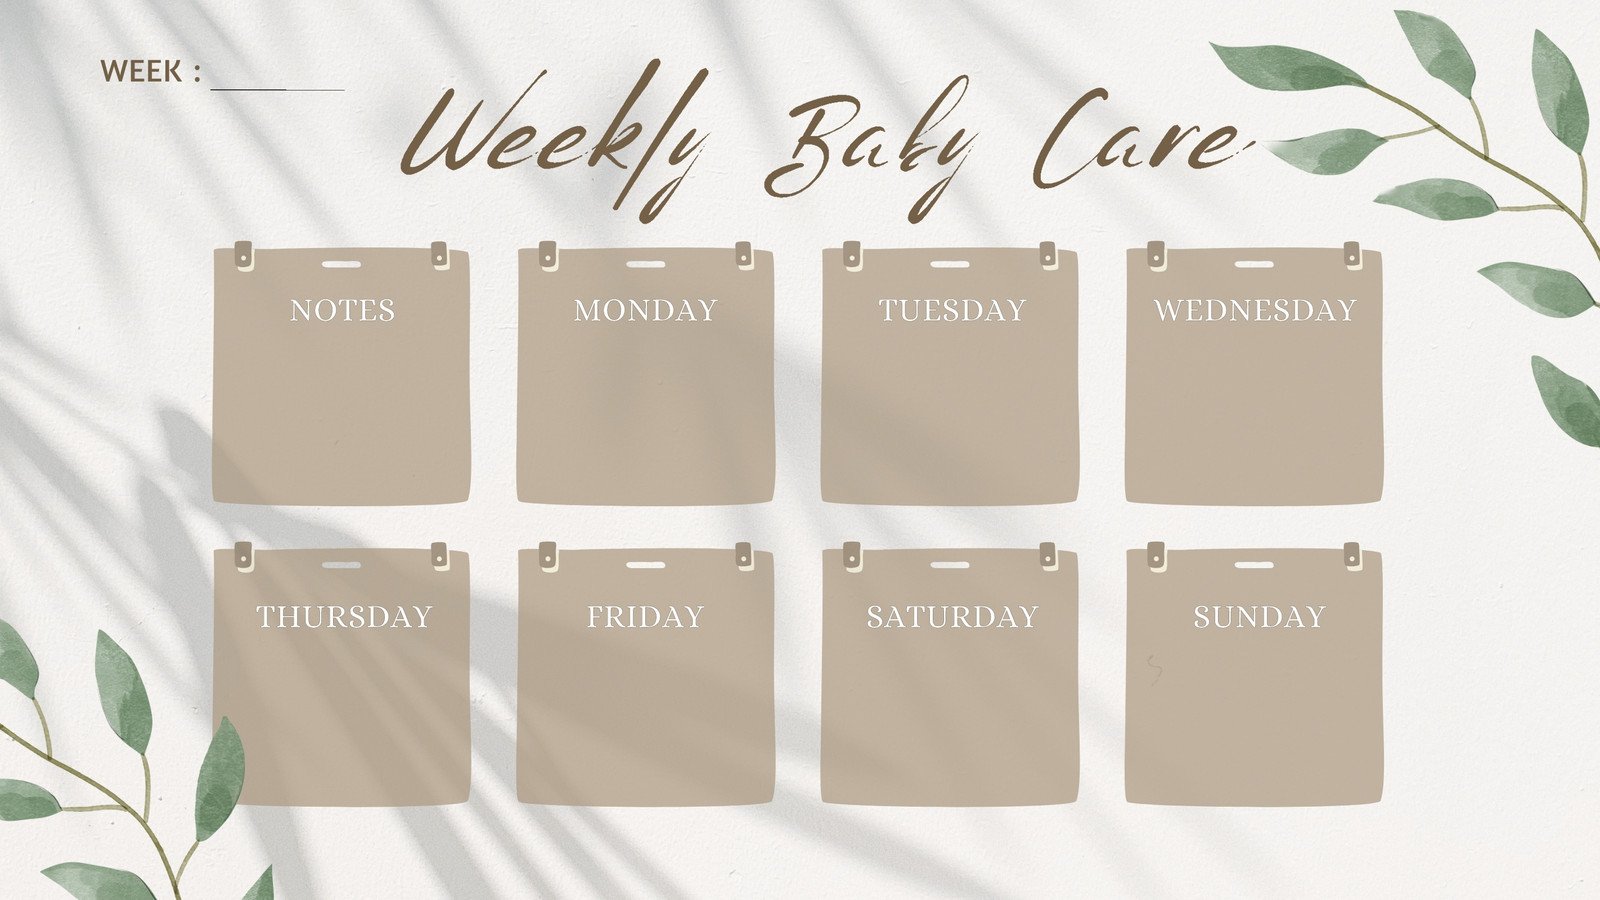 Brown Simple Baby Care Weekly Calendar